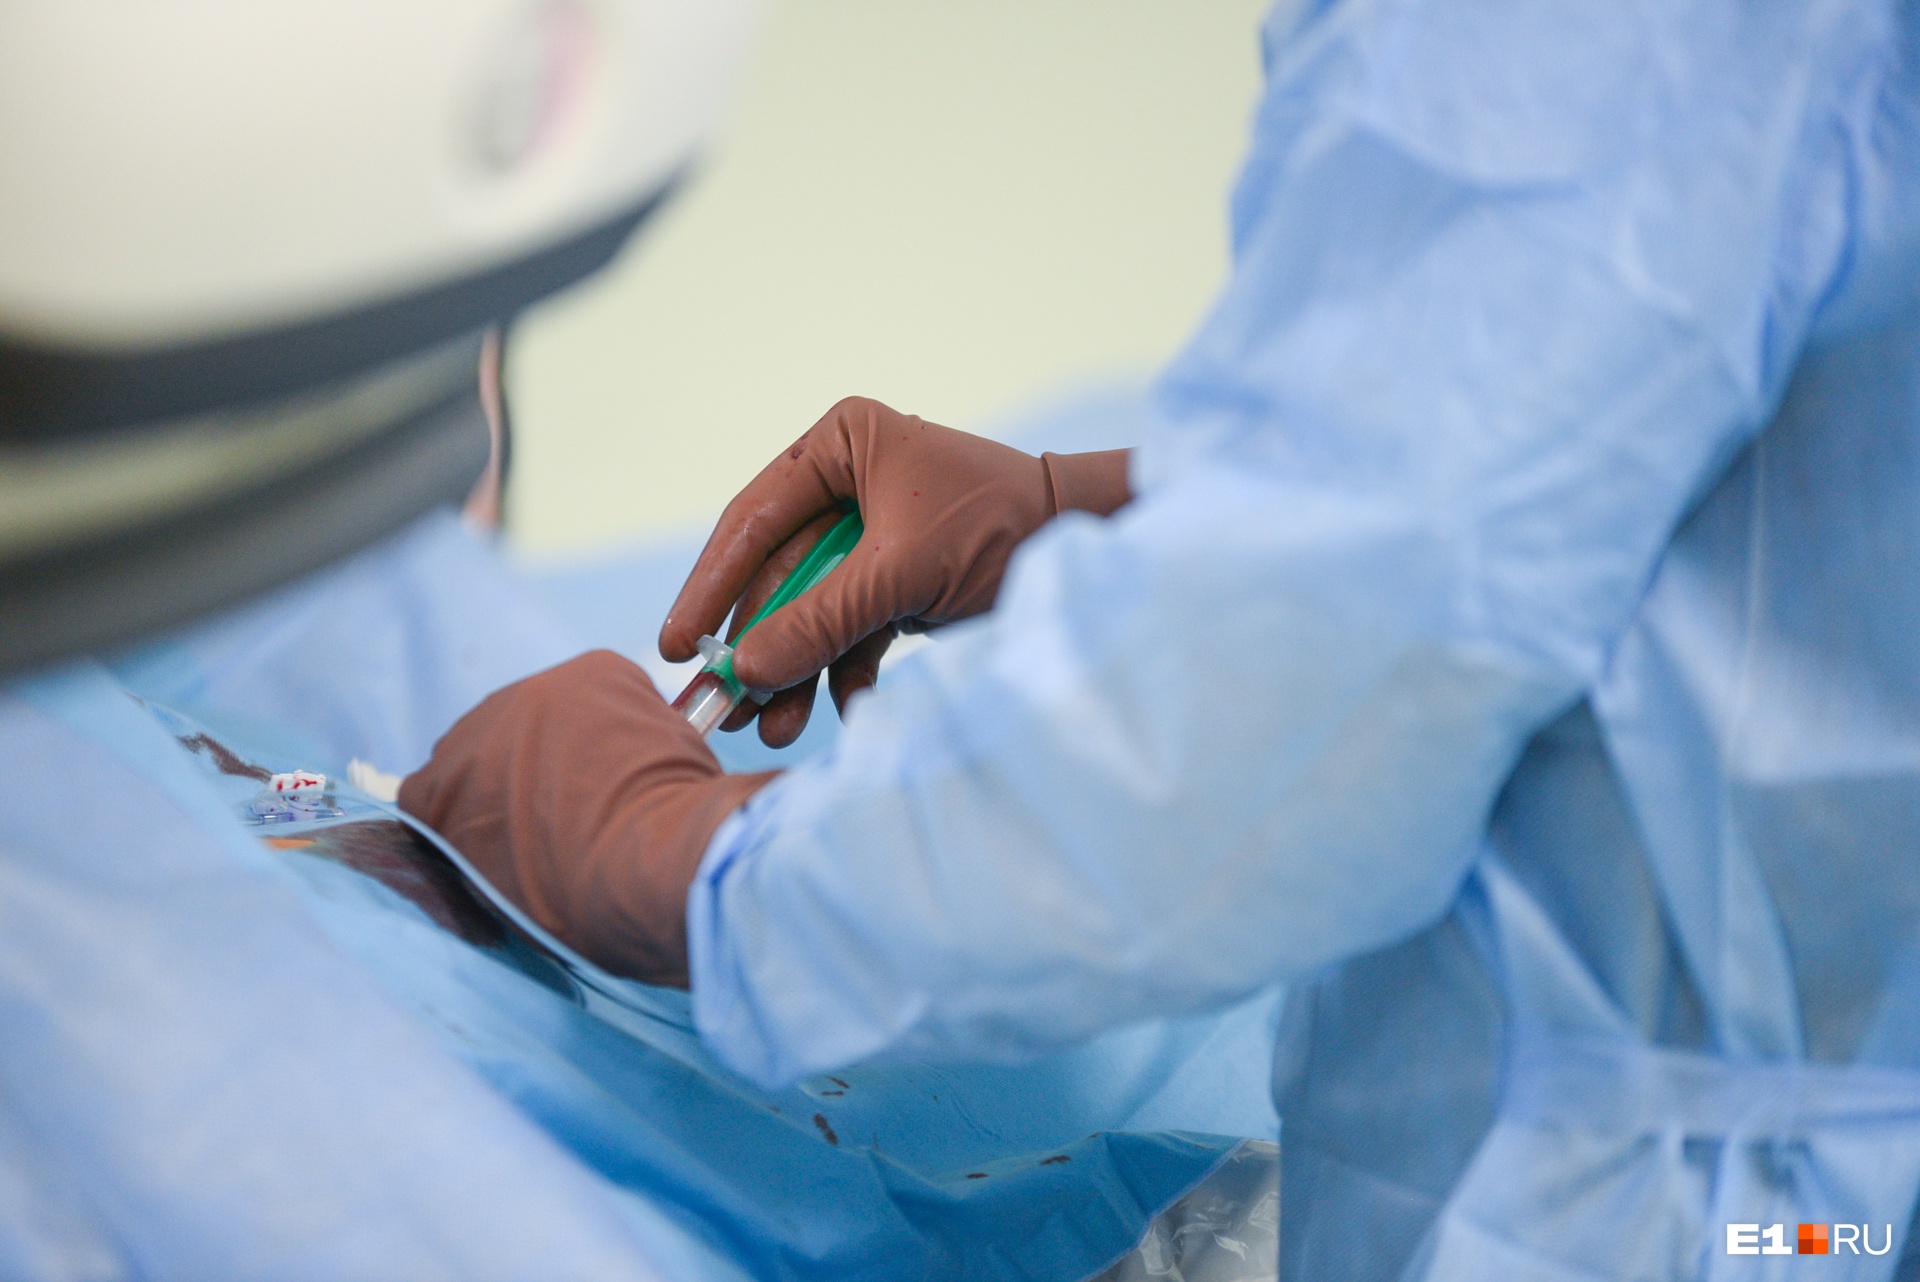 Кемеровские хирурги удалили у младенца второй желудок и пищевод. Лишние органы мешали малышу дышать